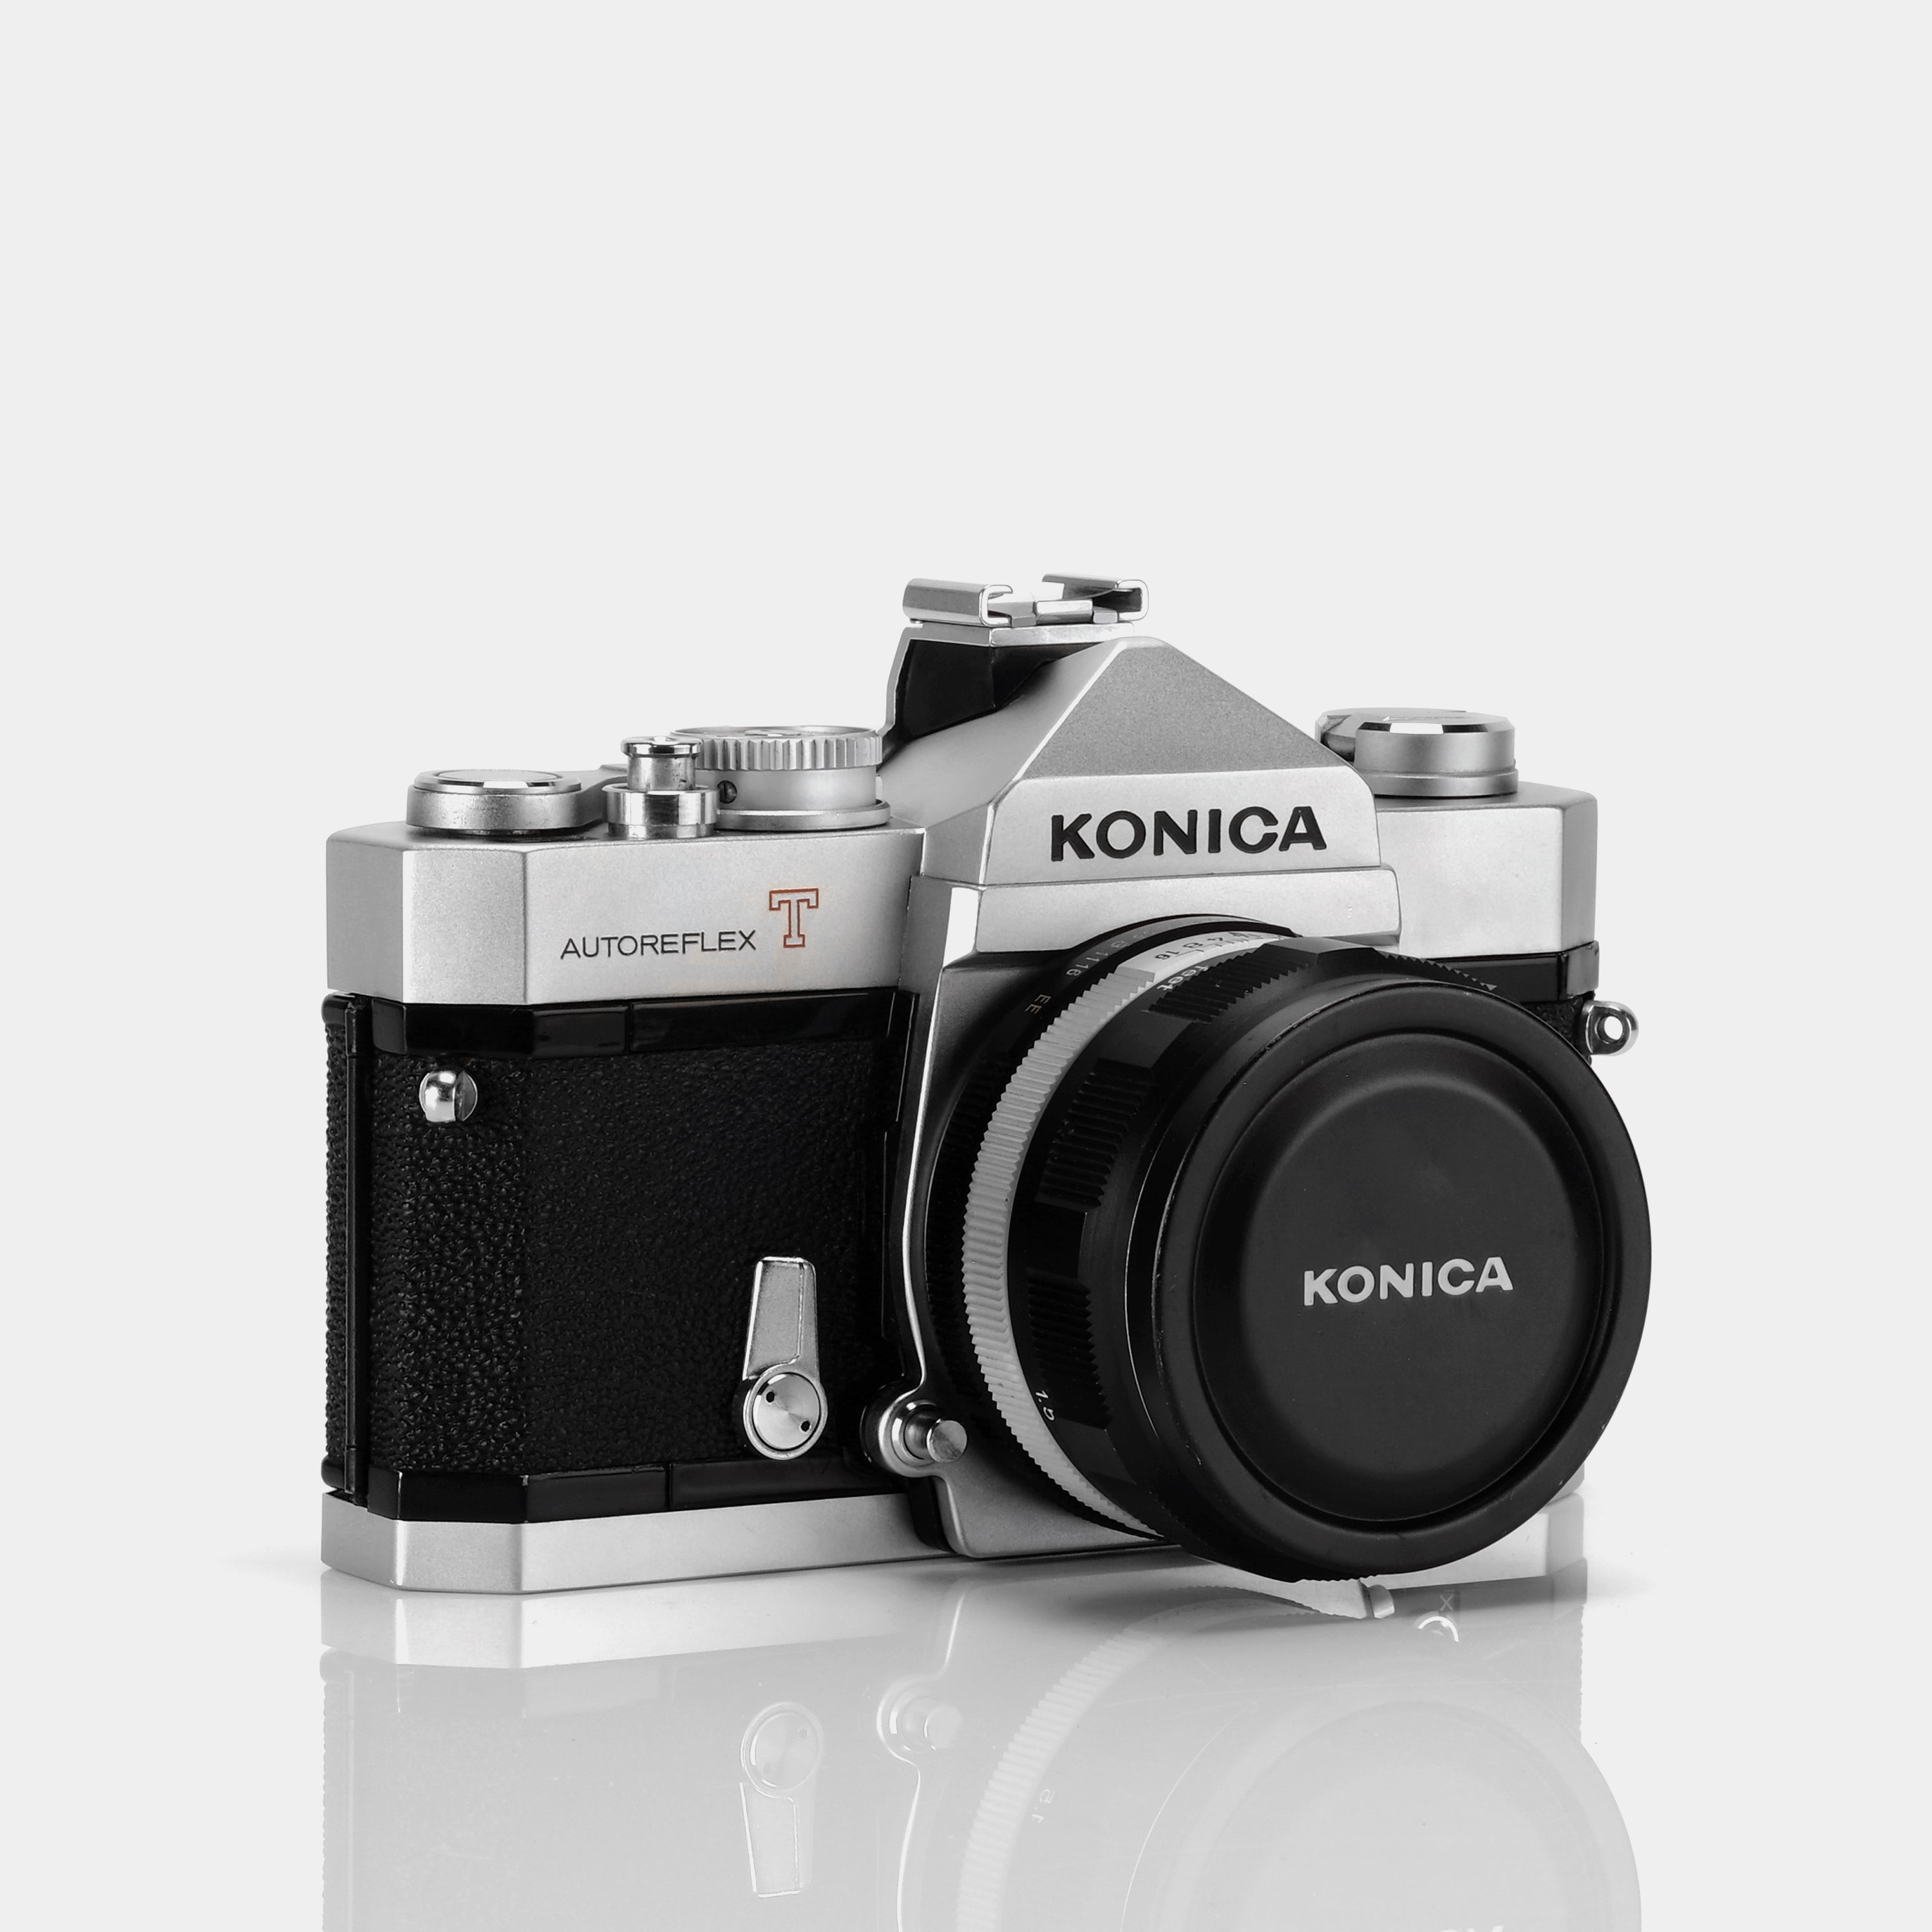 Konica Autoreflex T 35mm SLR Film Camera